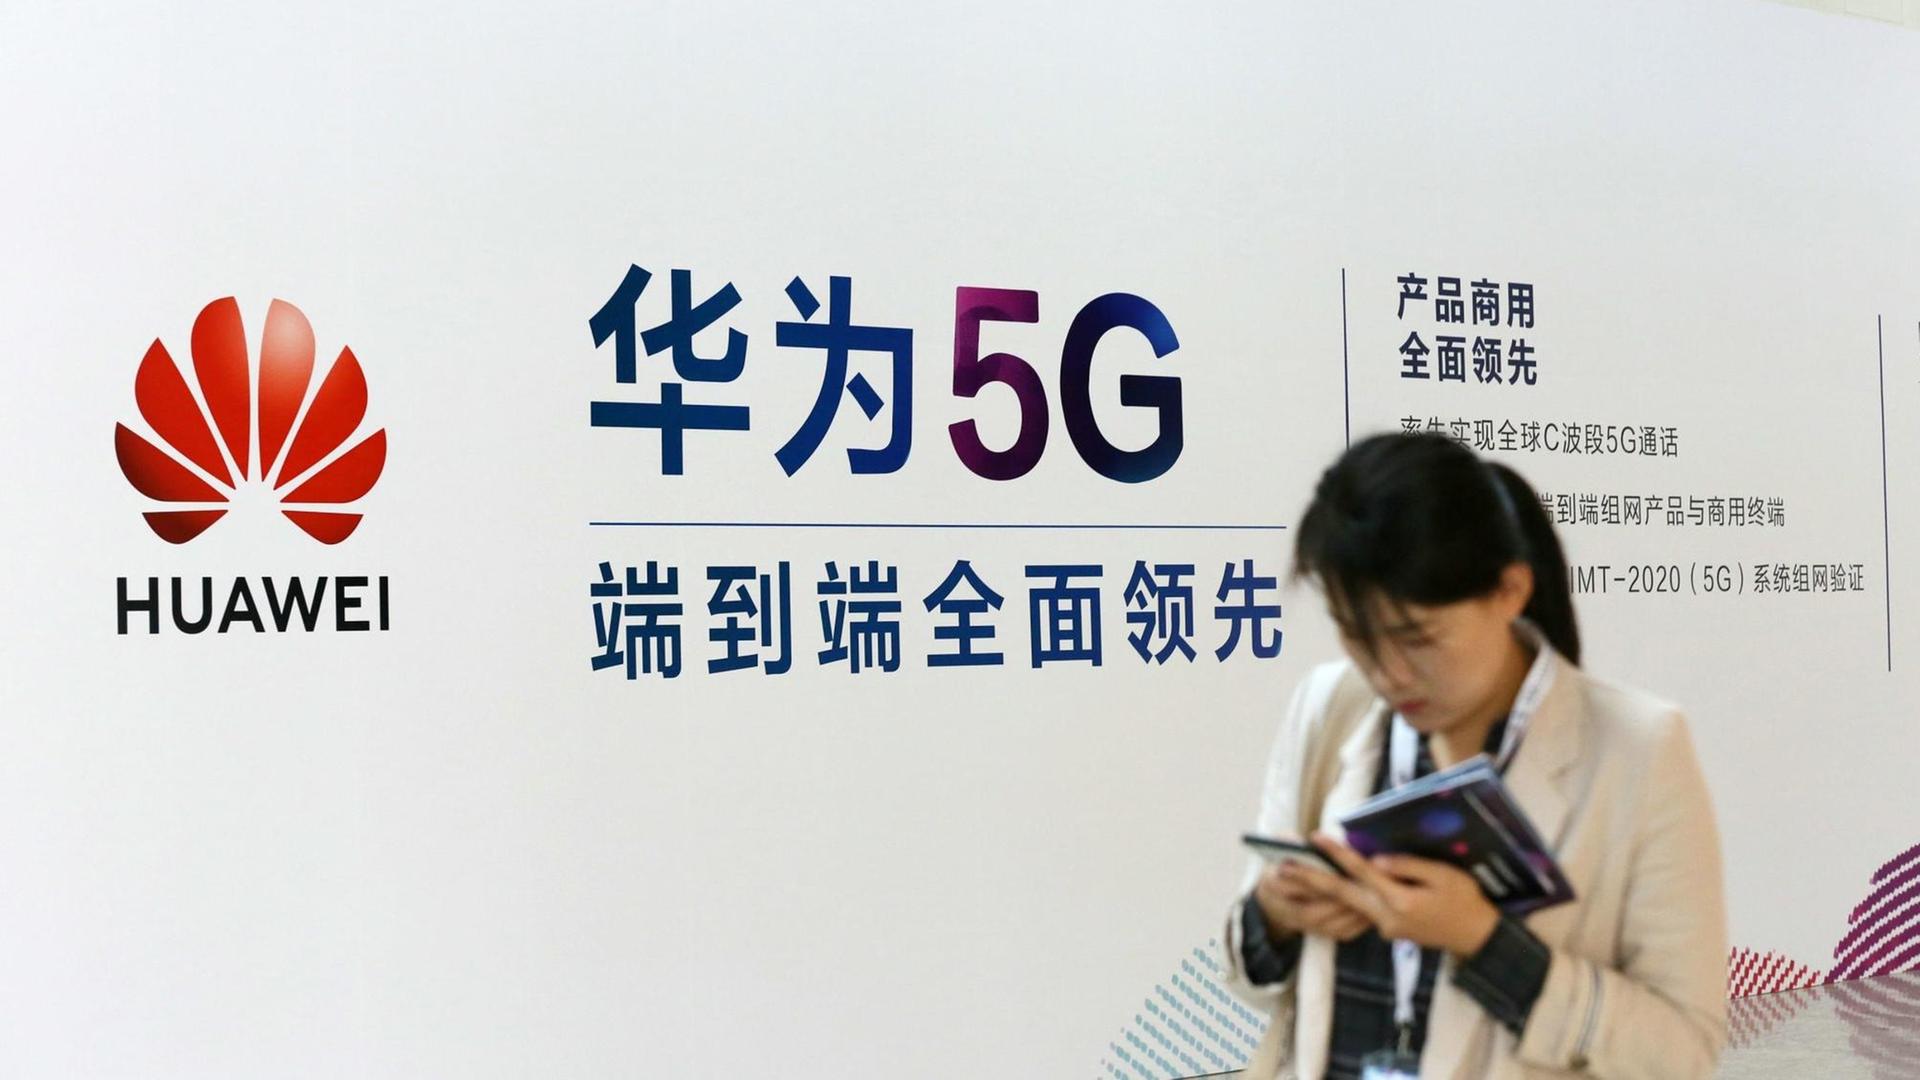 Eine Frau geht an einem Stand des chinesischen Technologiekonzerns Huawei mit Werbung für die 5G-Technik auf der Messe PT in Peking vorbei